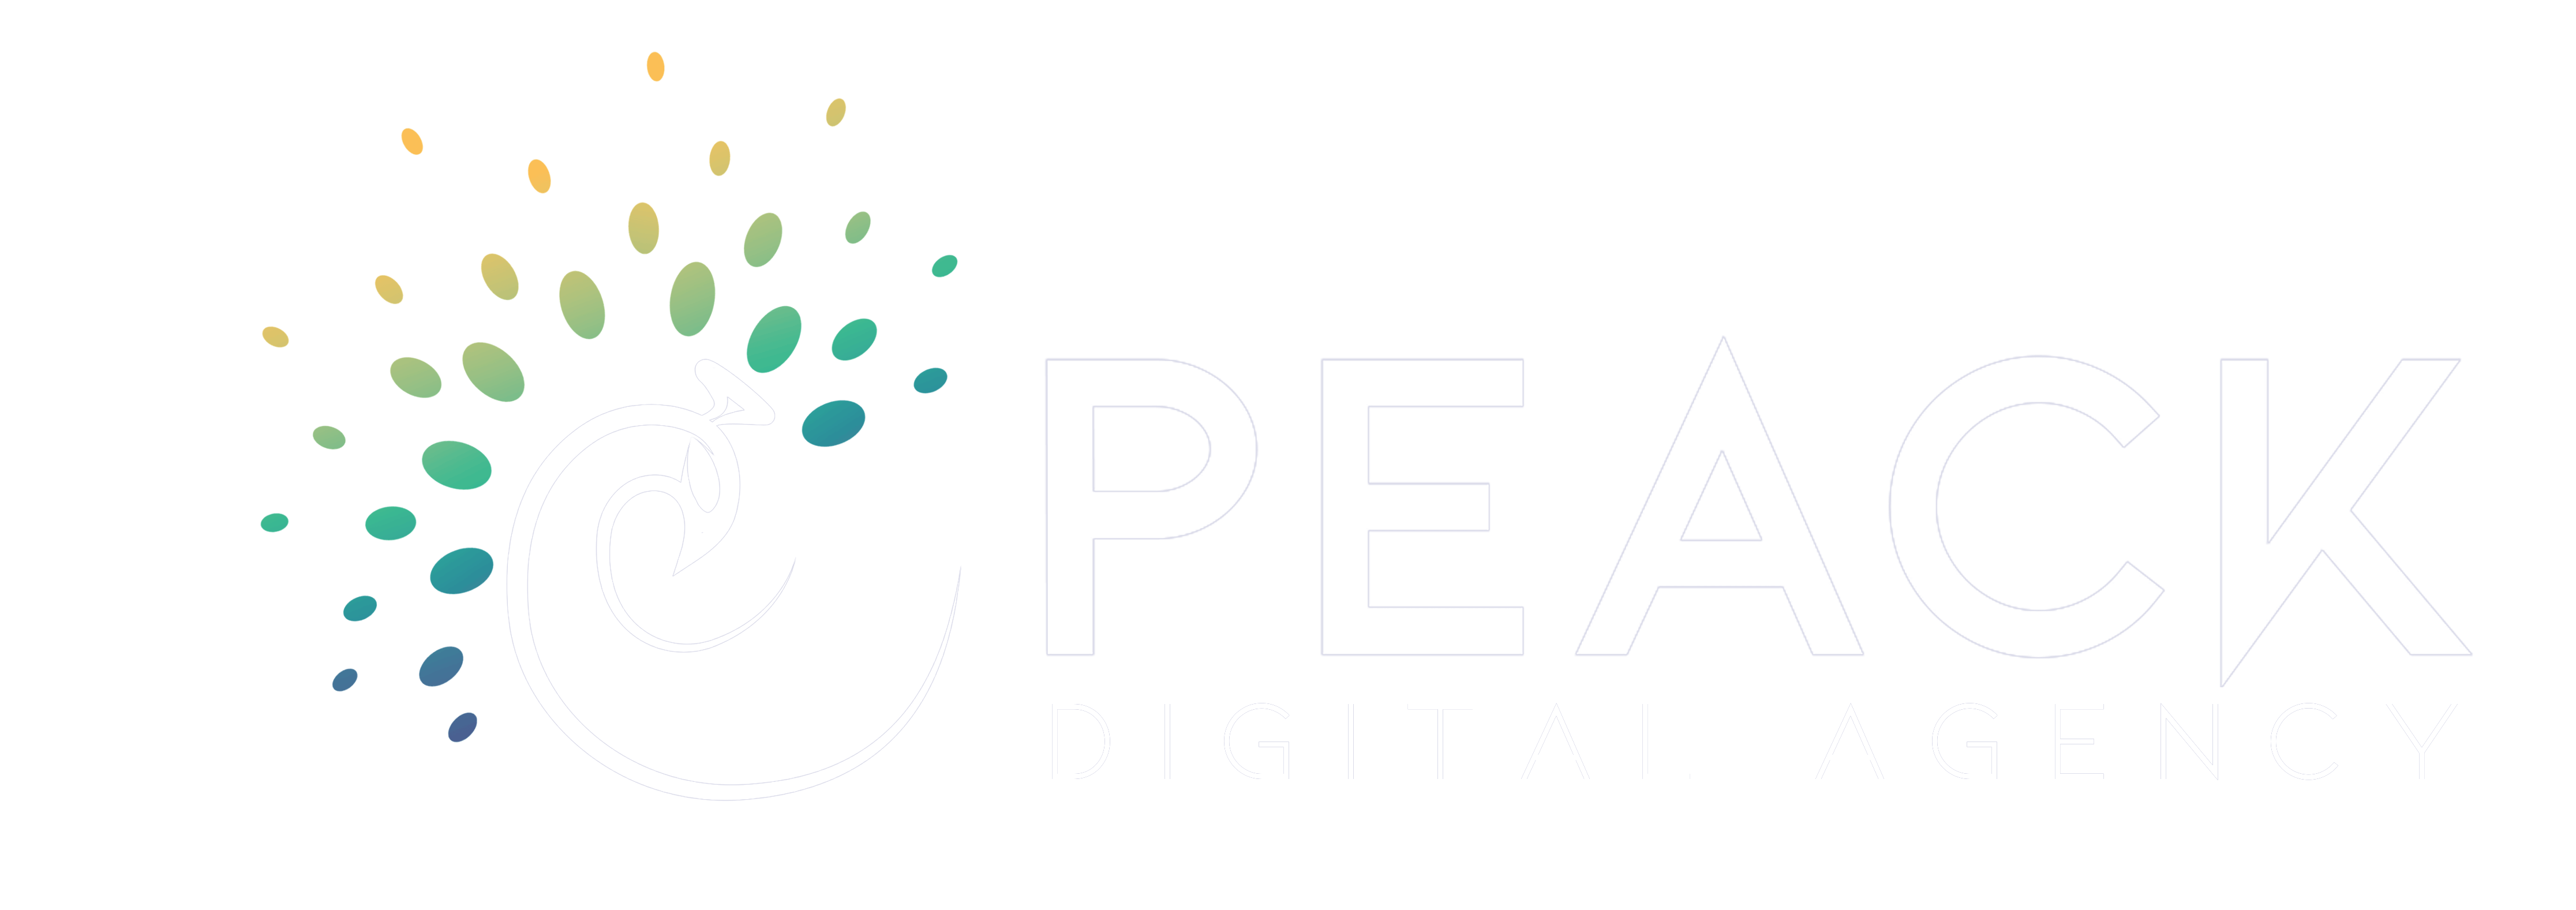 Peack – Digital Agency